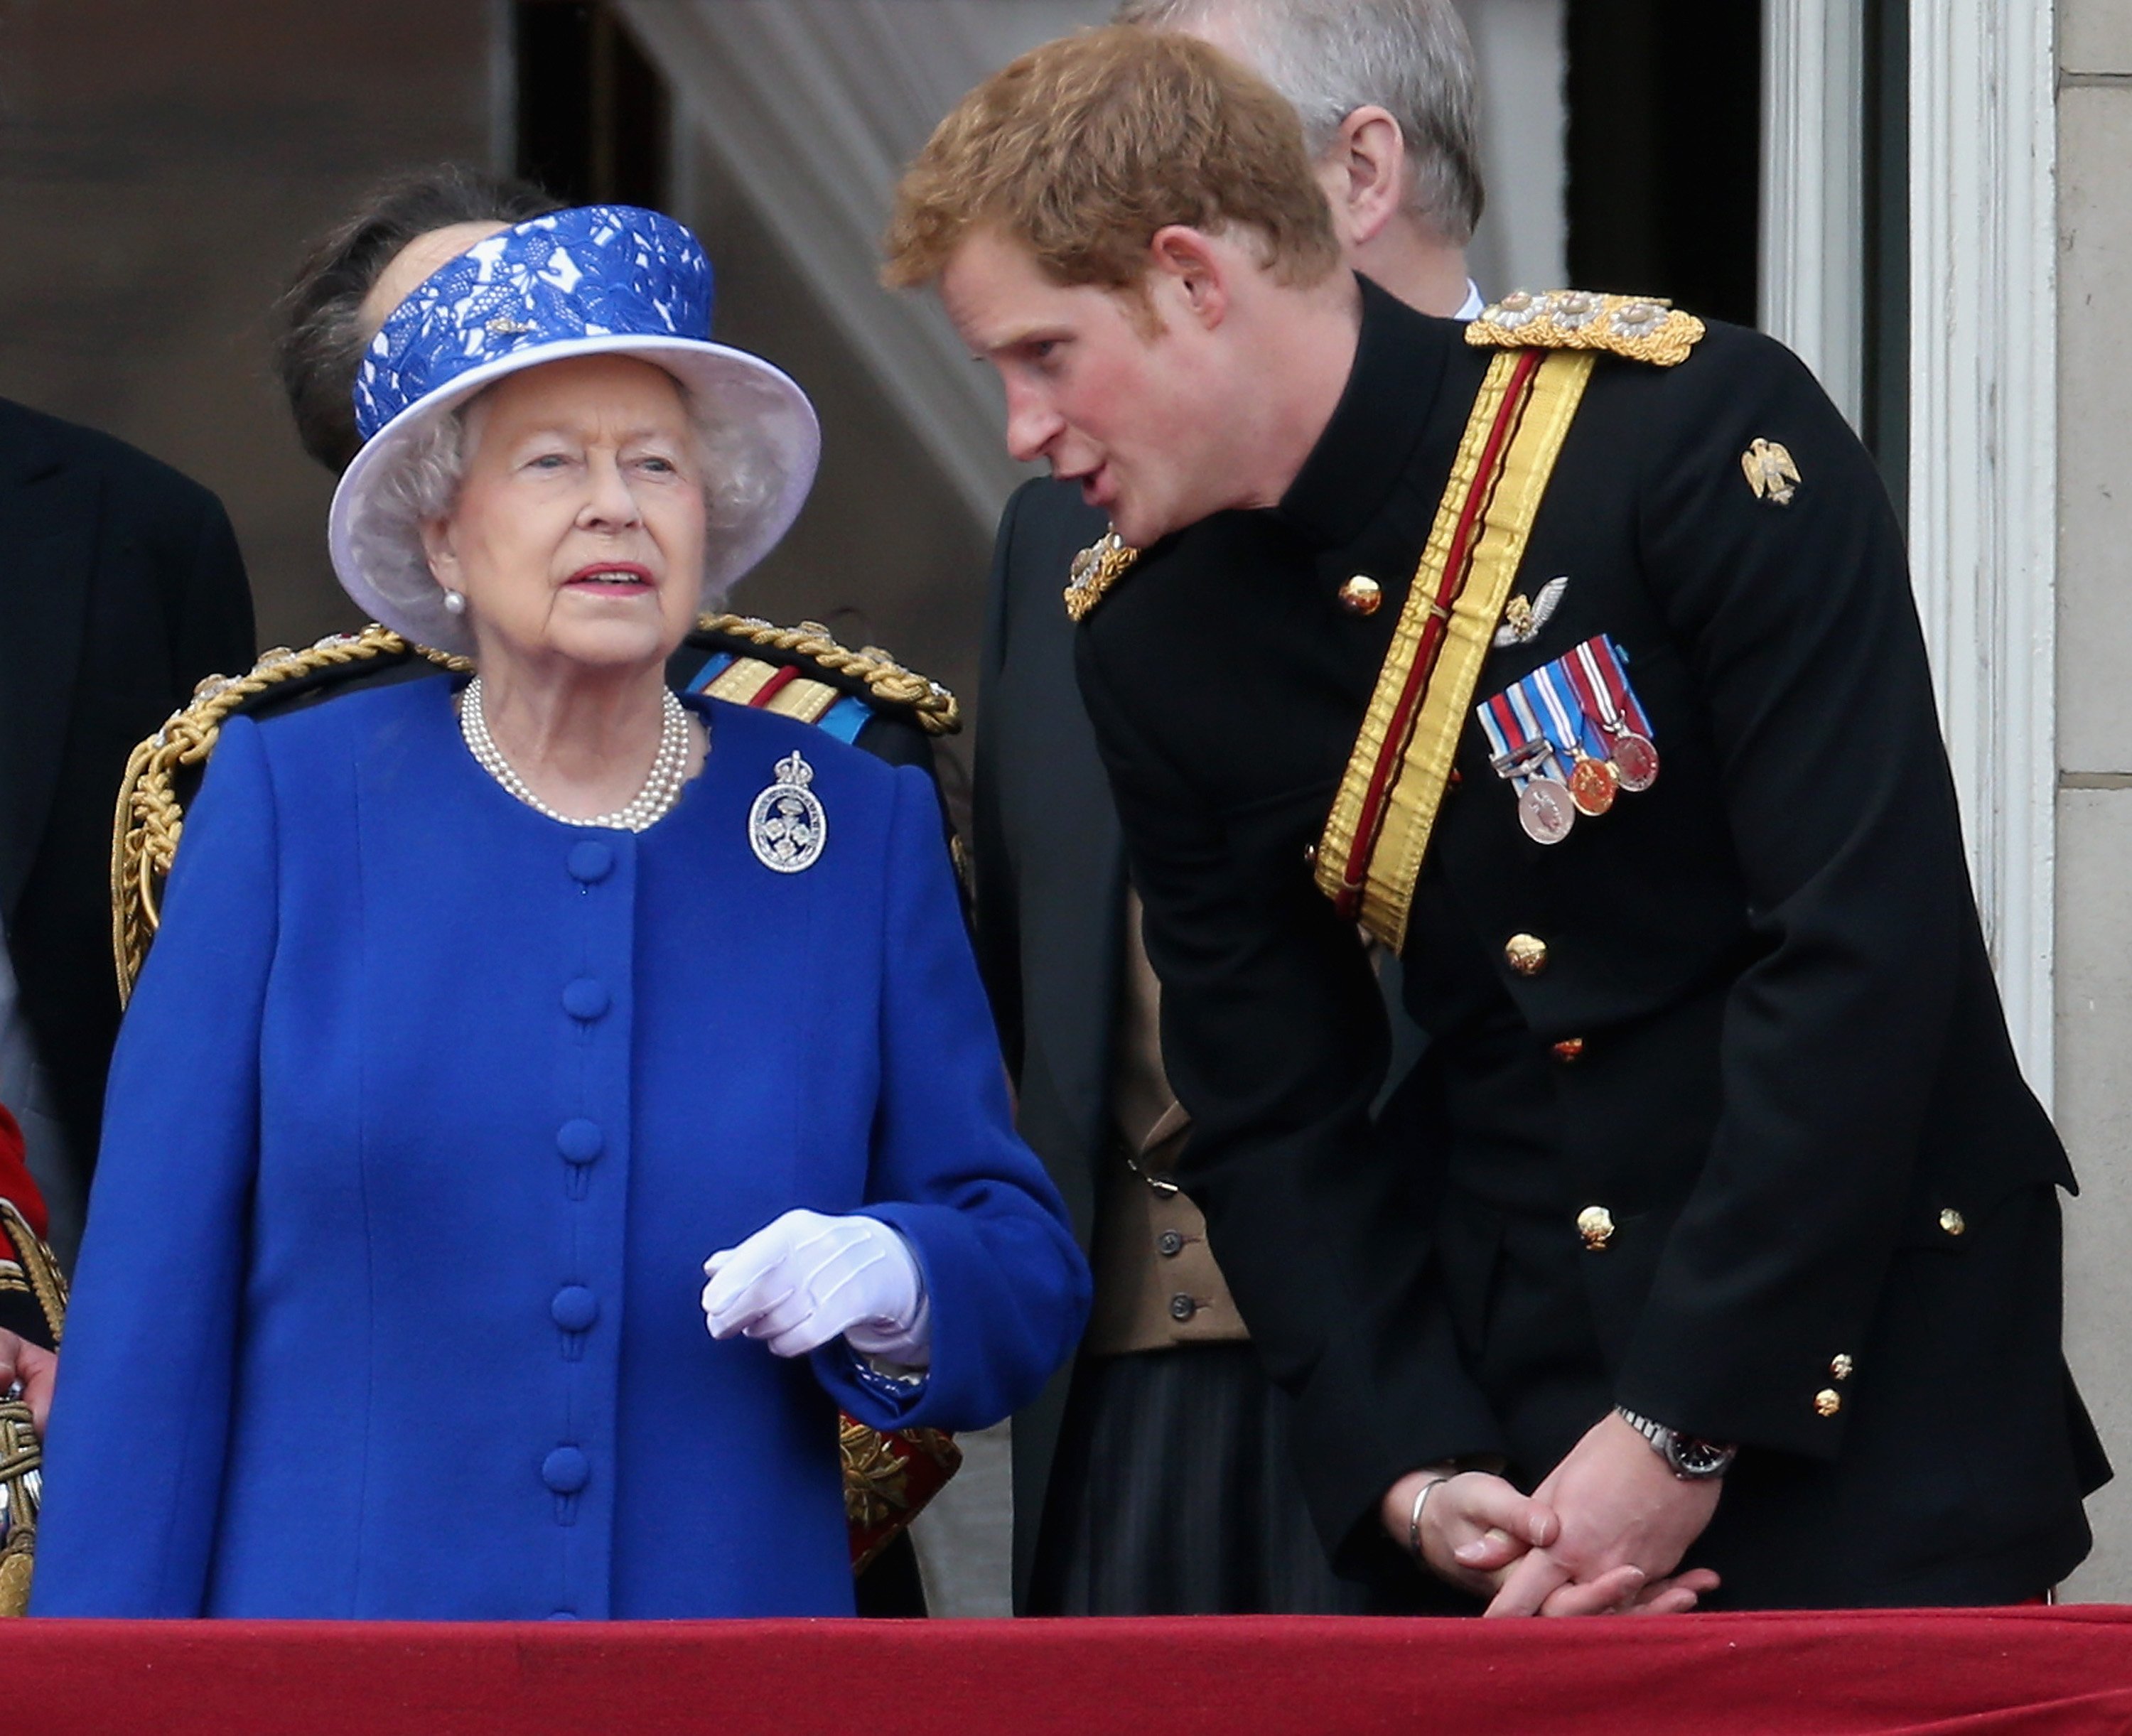 El príncipe Harry conversando con la reina Elizabeth II en el balcón del palacio de Buckingham durante la ceremonia anual Trooping the Colour el 15 de junio de 2013 en Londres, Inglaterra. | Foto: Getty Images